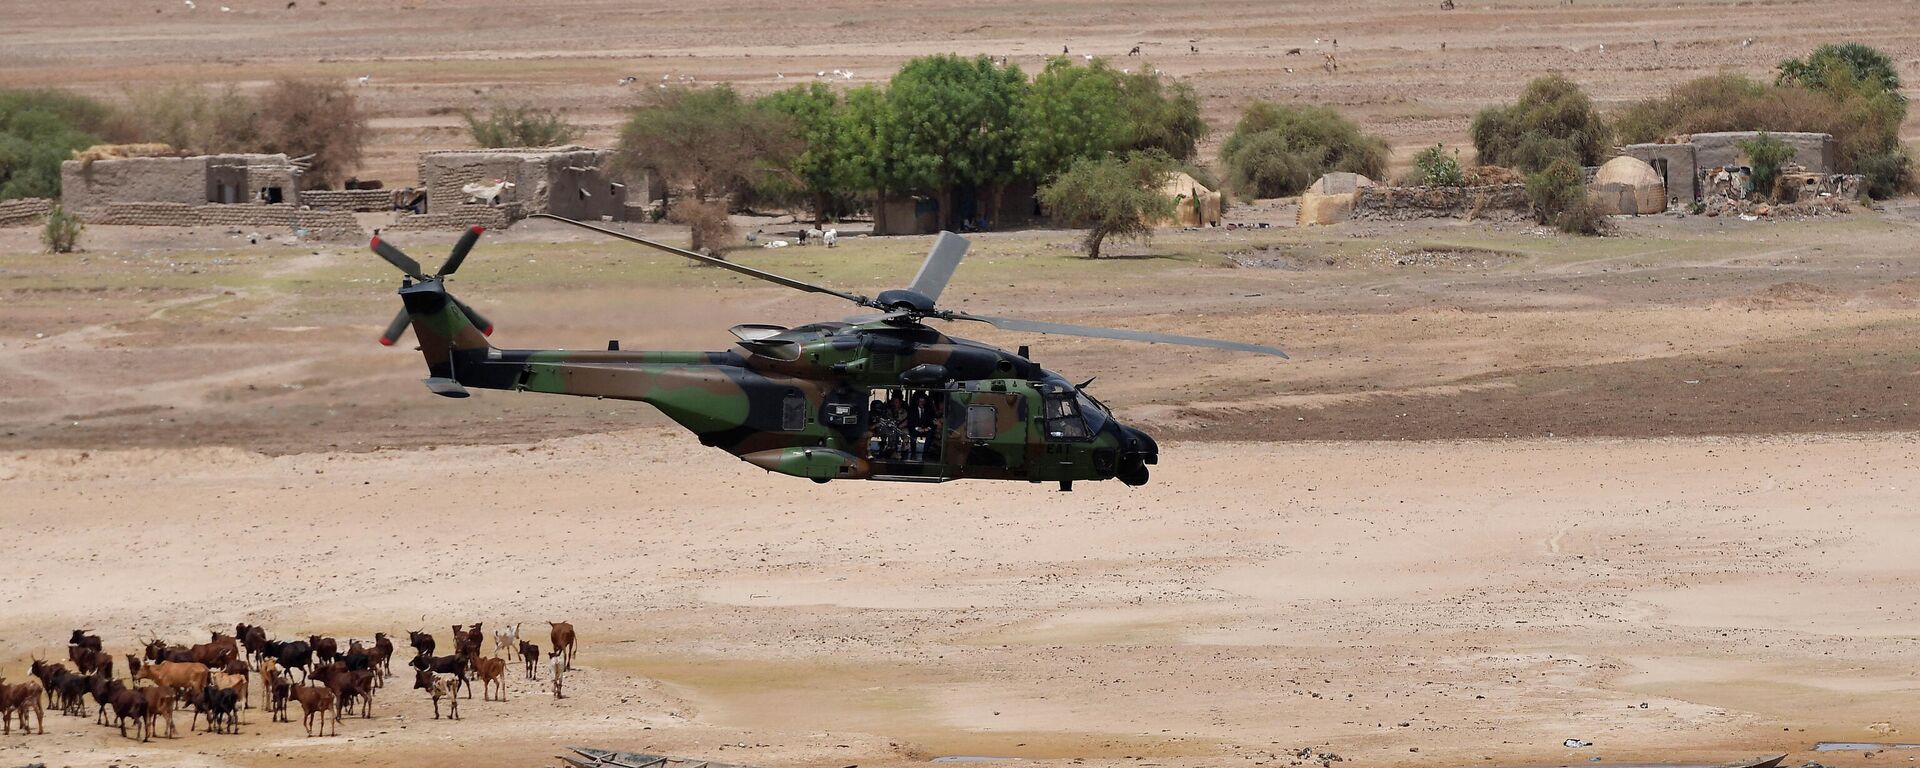 El helicóptero del presidente francés Emmanuel Macron sobrevuela Gao mientras visita a las tropas francesas en la región africana del Sahel en Gao, norte de Malí, el 19 de mayo de 2017 - Sputnik Mundo, 1920, 17.02.2022